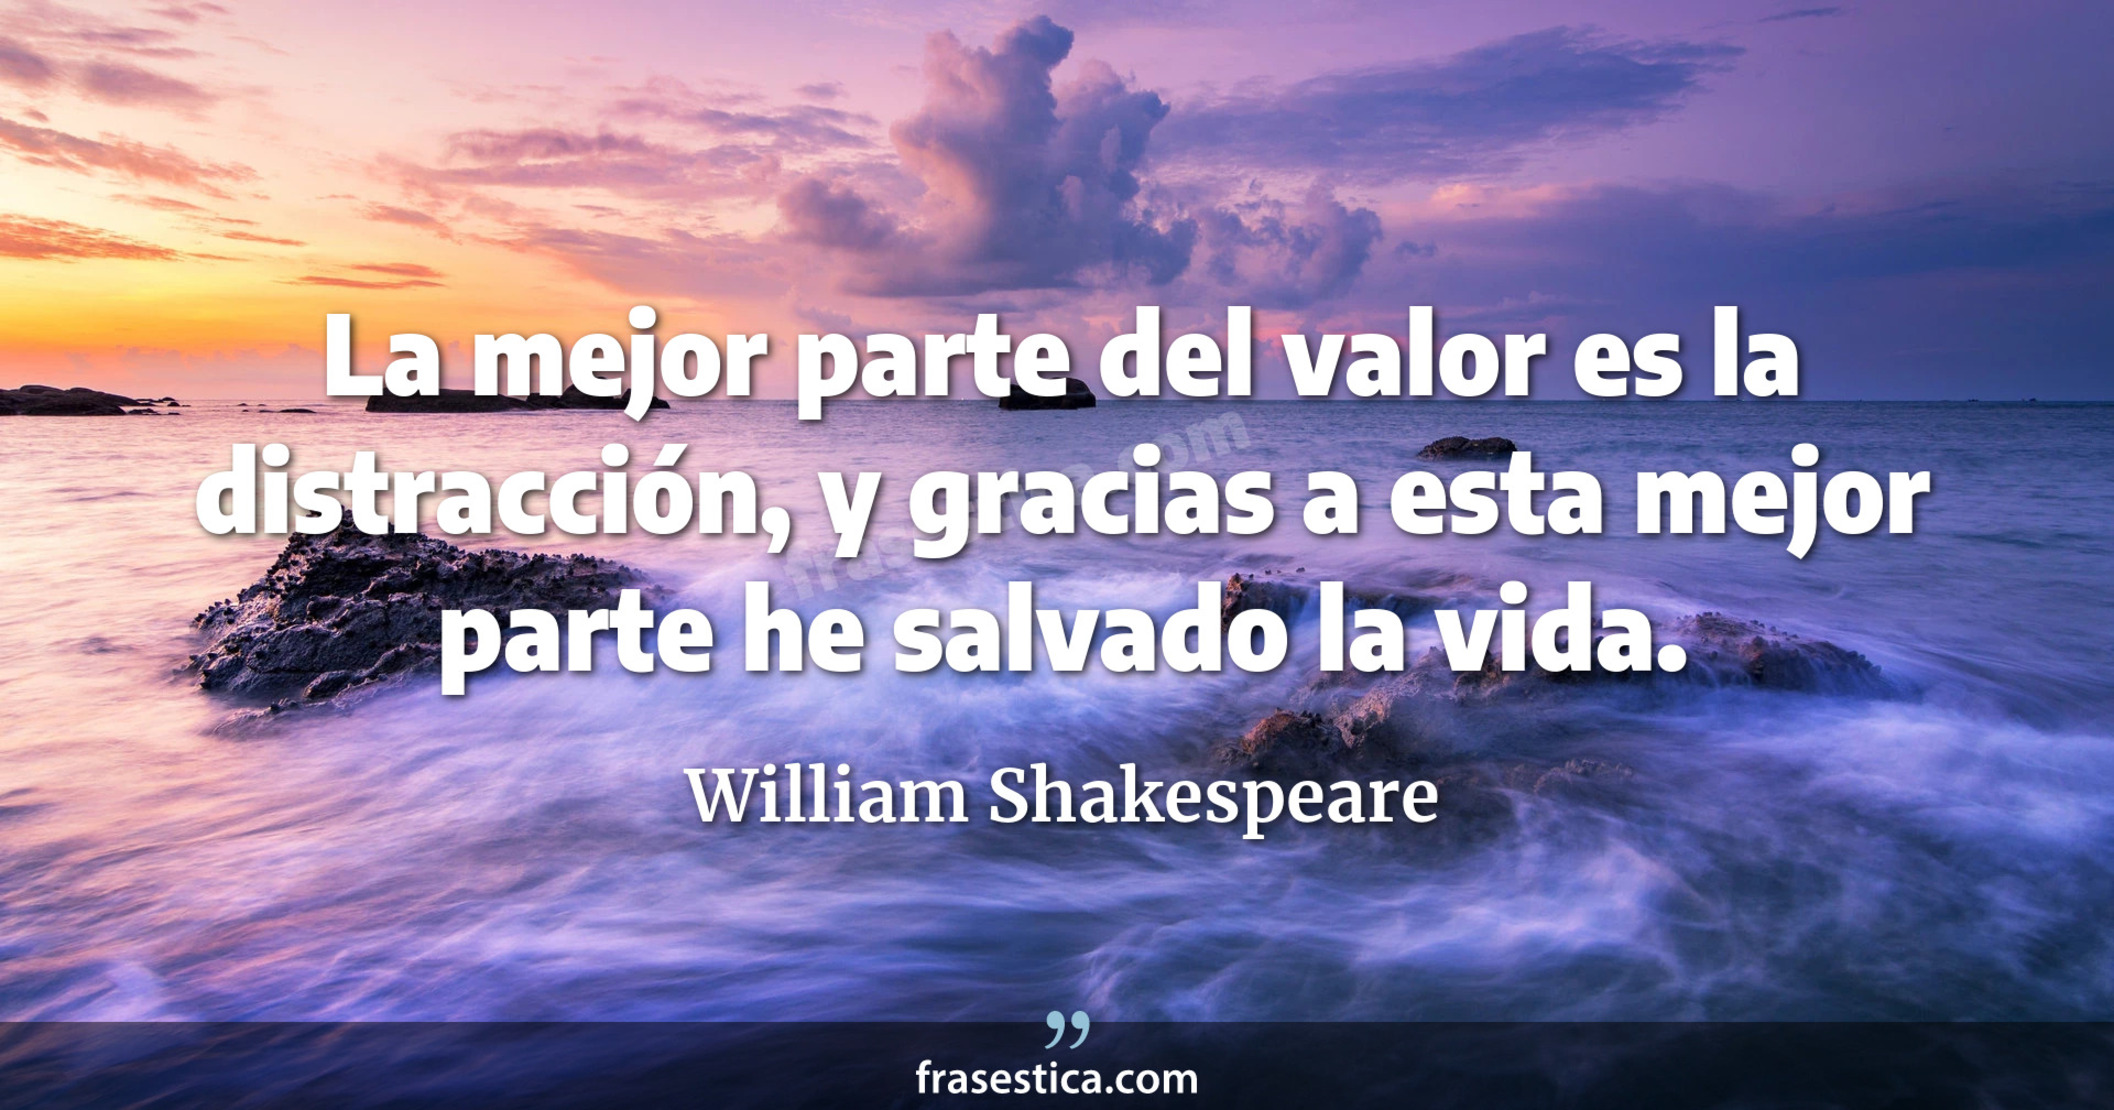 La mejor parte del valor es la distracción, y gracias a esta mejor parte he salvado la vida. - William Shakespeare